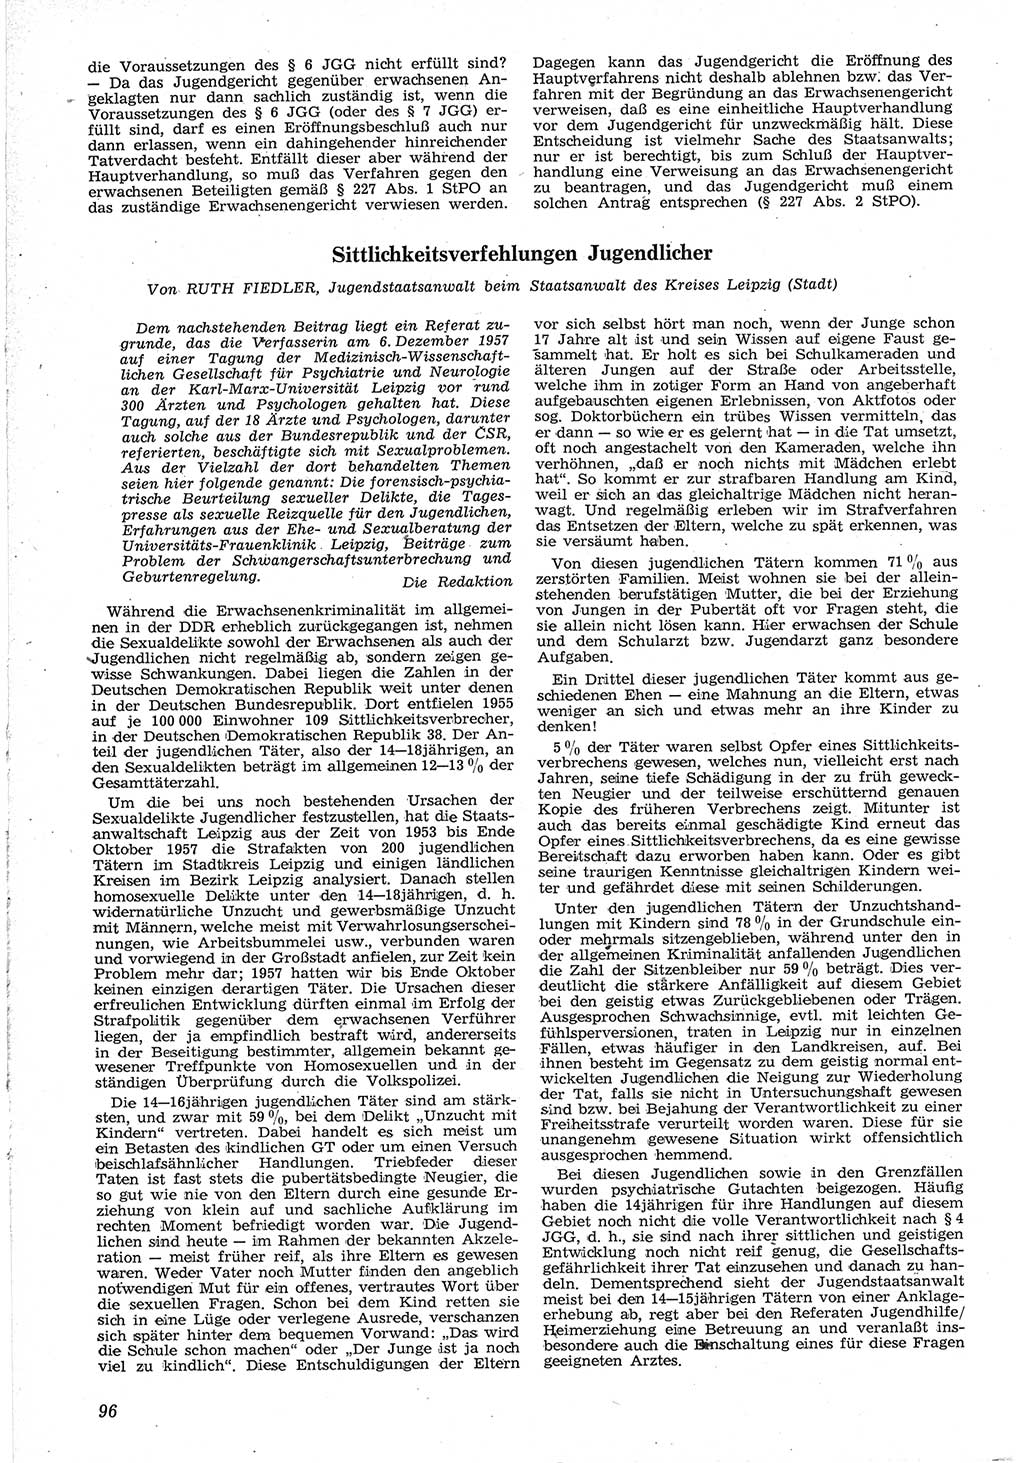 Neue Justiz (NJ), Zeitschrift für Recht und Rechtswissenschaft [Deutsche Demokratische Republik (DDR)], 12. Jahrgang 1958, Seite 96 (NJ DDR 1958, S. 96)